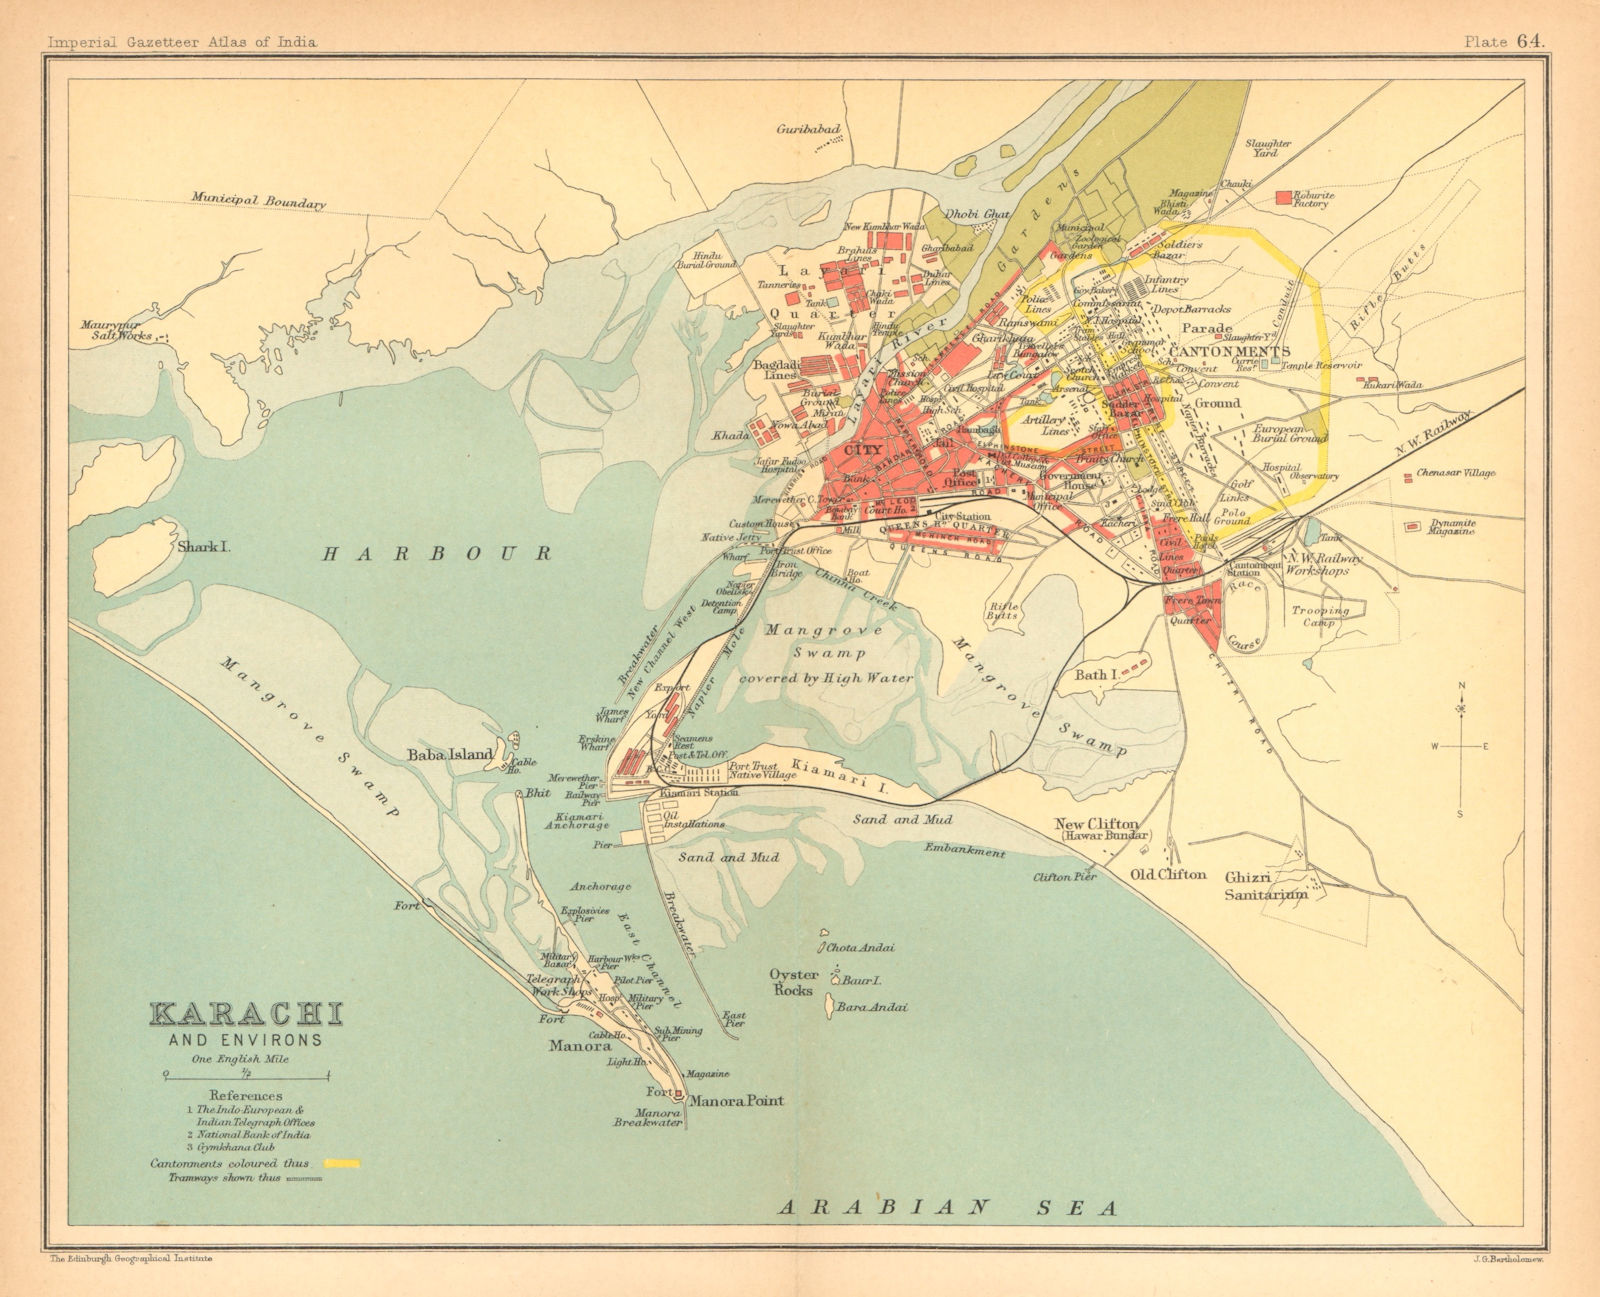 Karachi town city plan. Buildings & Cantonment. Pakistan. British India 1909 map